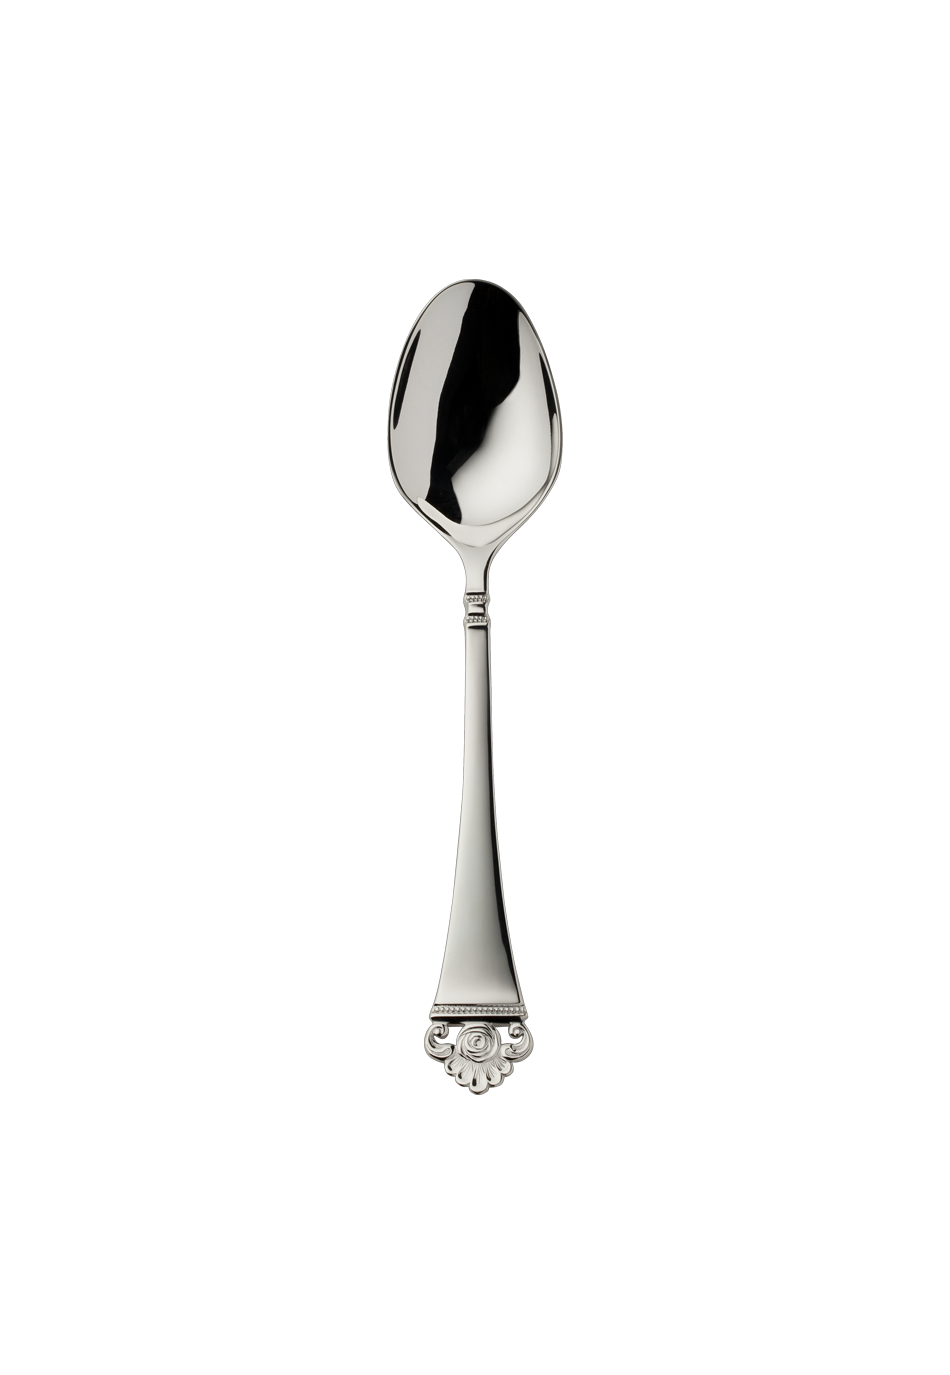 Rosenmuster Children's Spoon (150g massive silverplated)